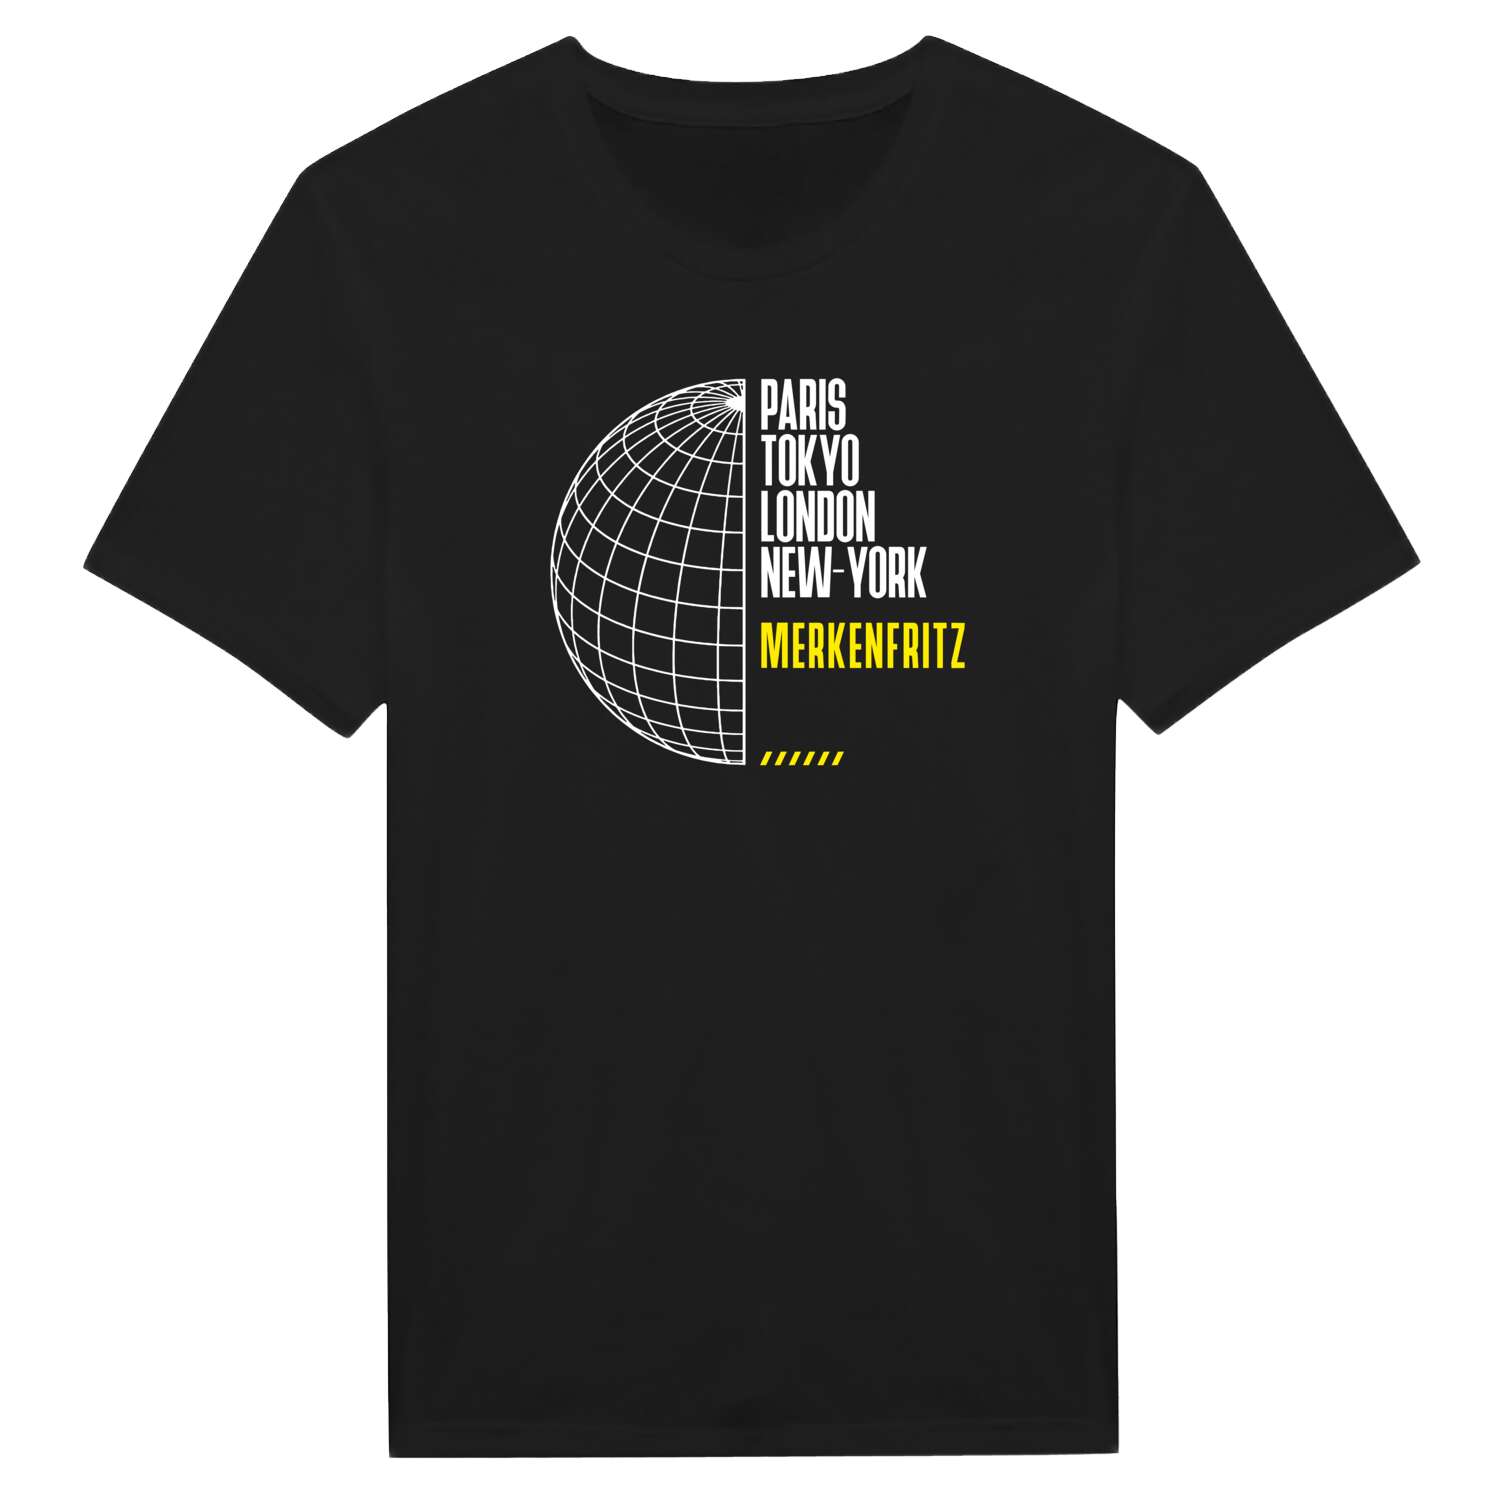 Merkenfritz T-Shirt »Paris Tokyo London«